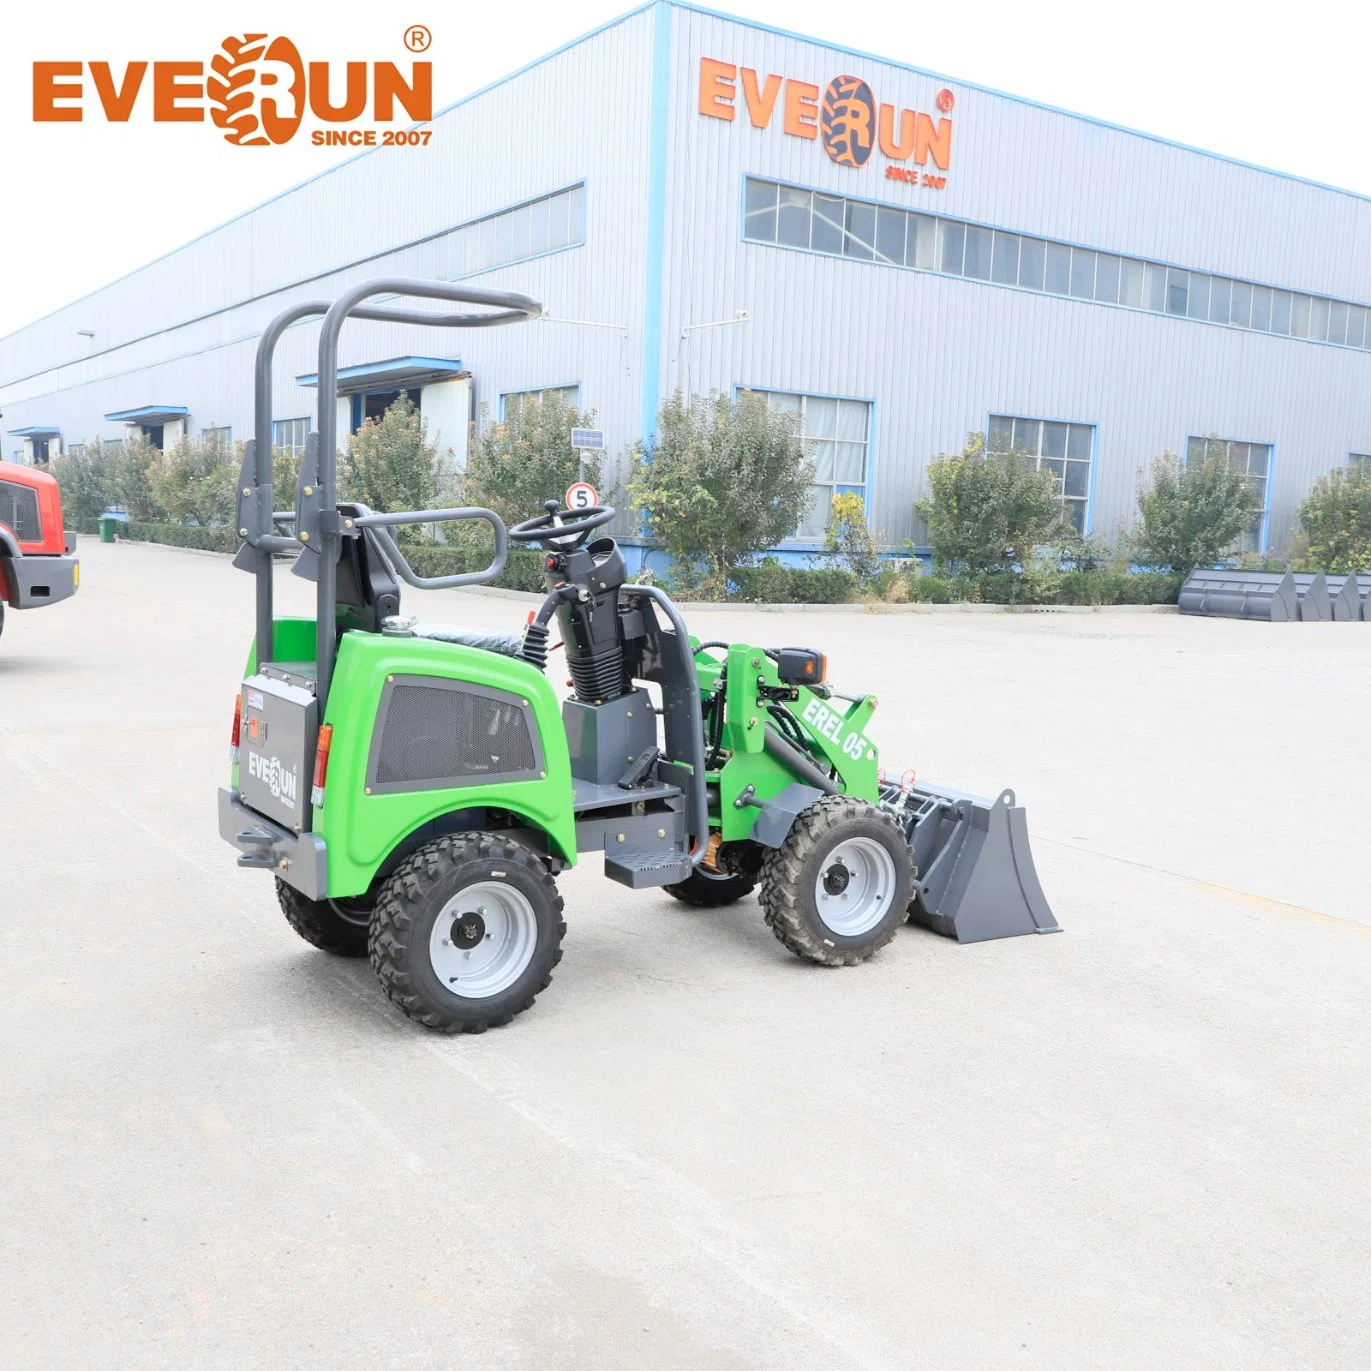 Everun EREL05 0.5ton mini chargeur sur roues électrique agricole chinois pour la maison, le jardin et la construction, avec certification CE EPA, à vendre